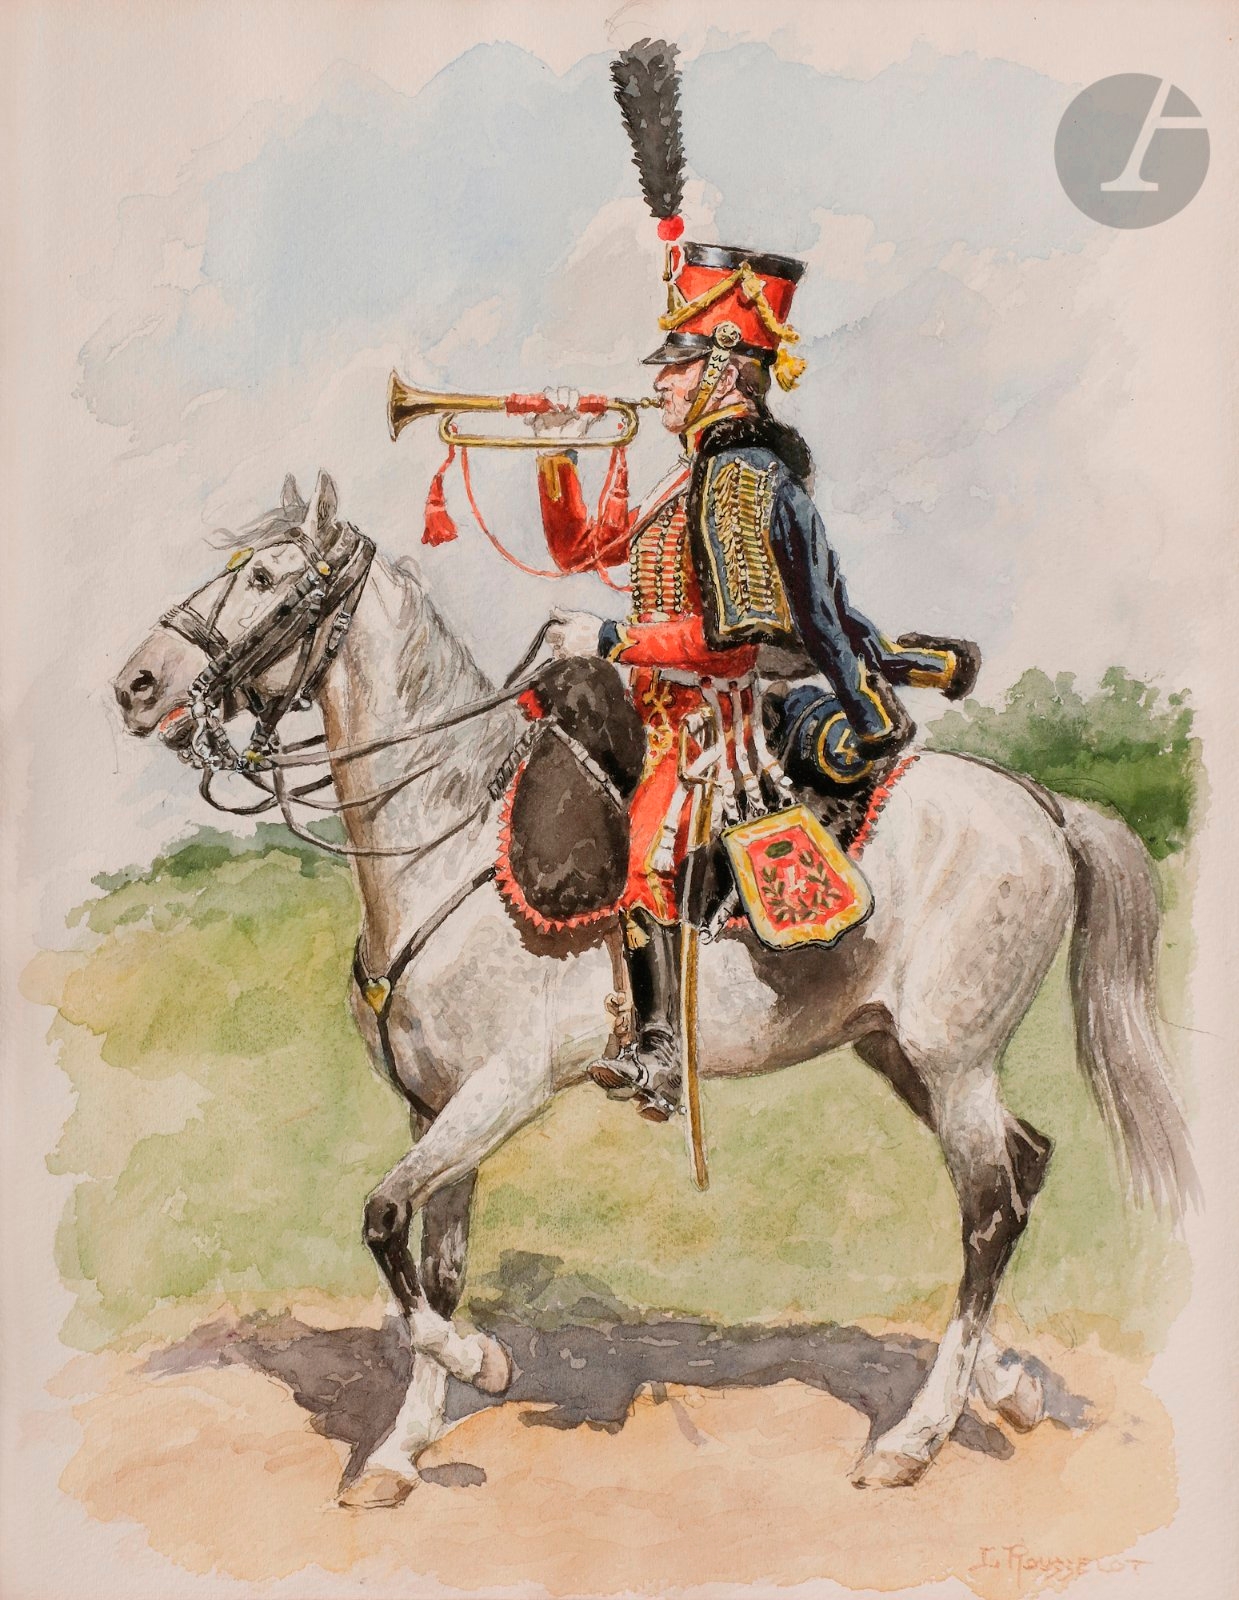 Le Roch, Saumur, Homme en tenue militaire, Ecole impériale de Cavalerie by  Photographie originale / Original photograph: (1865) Photograph